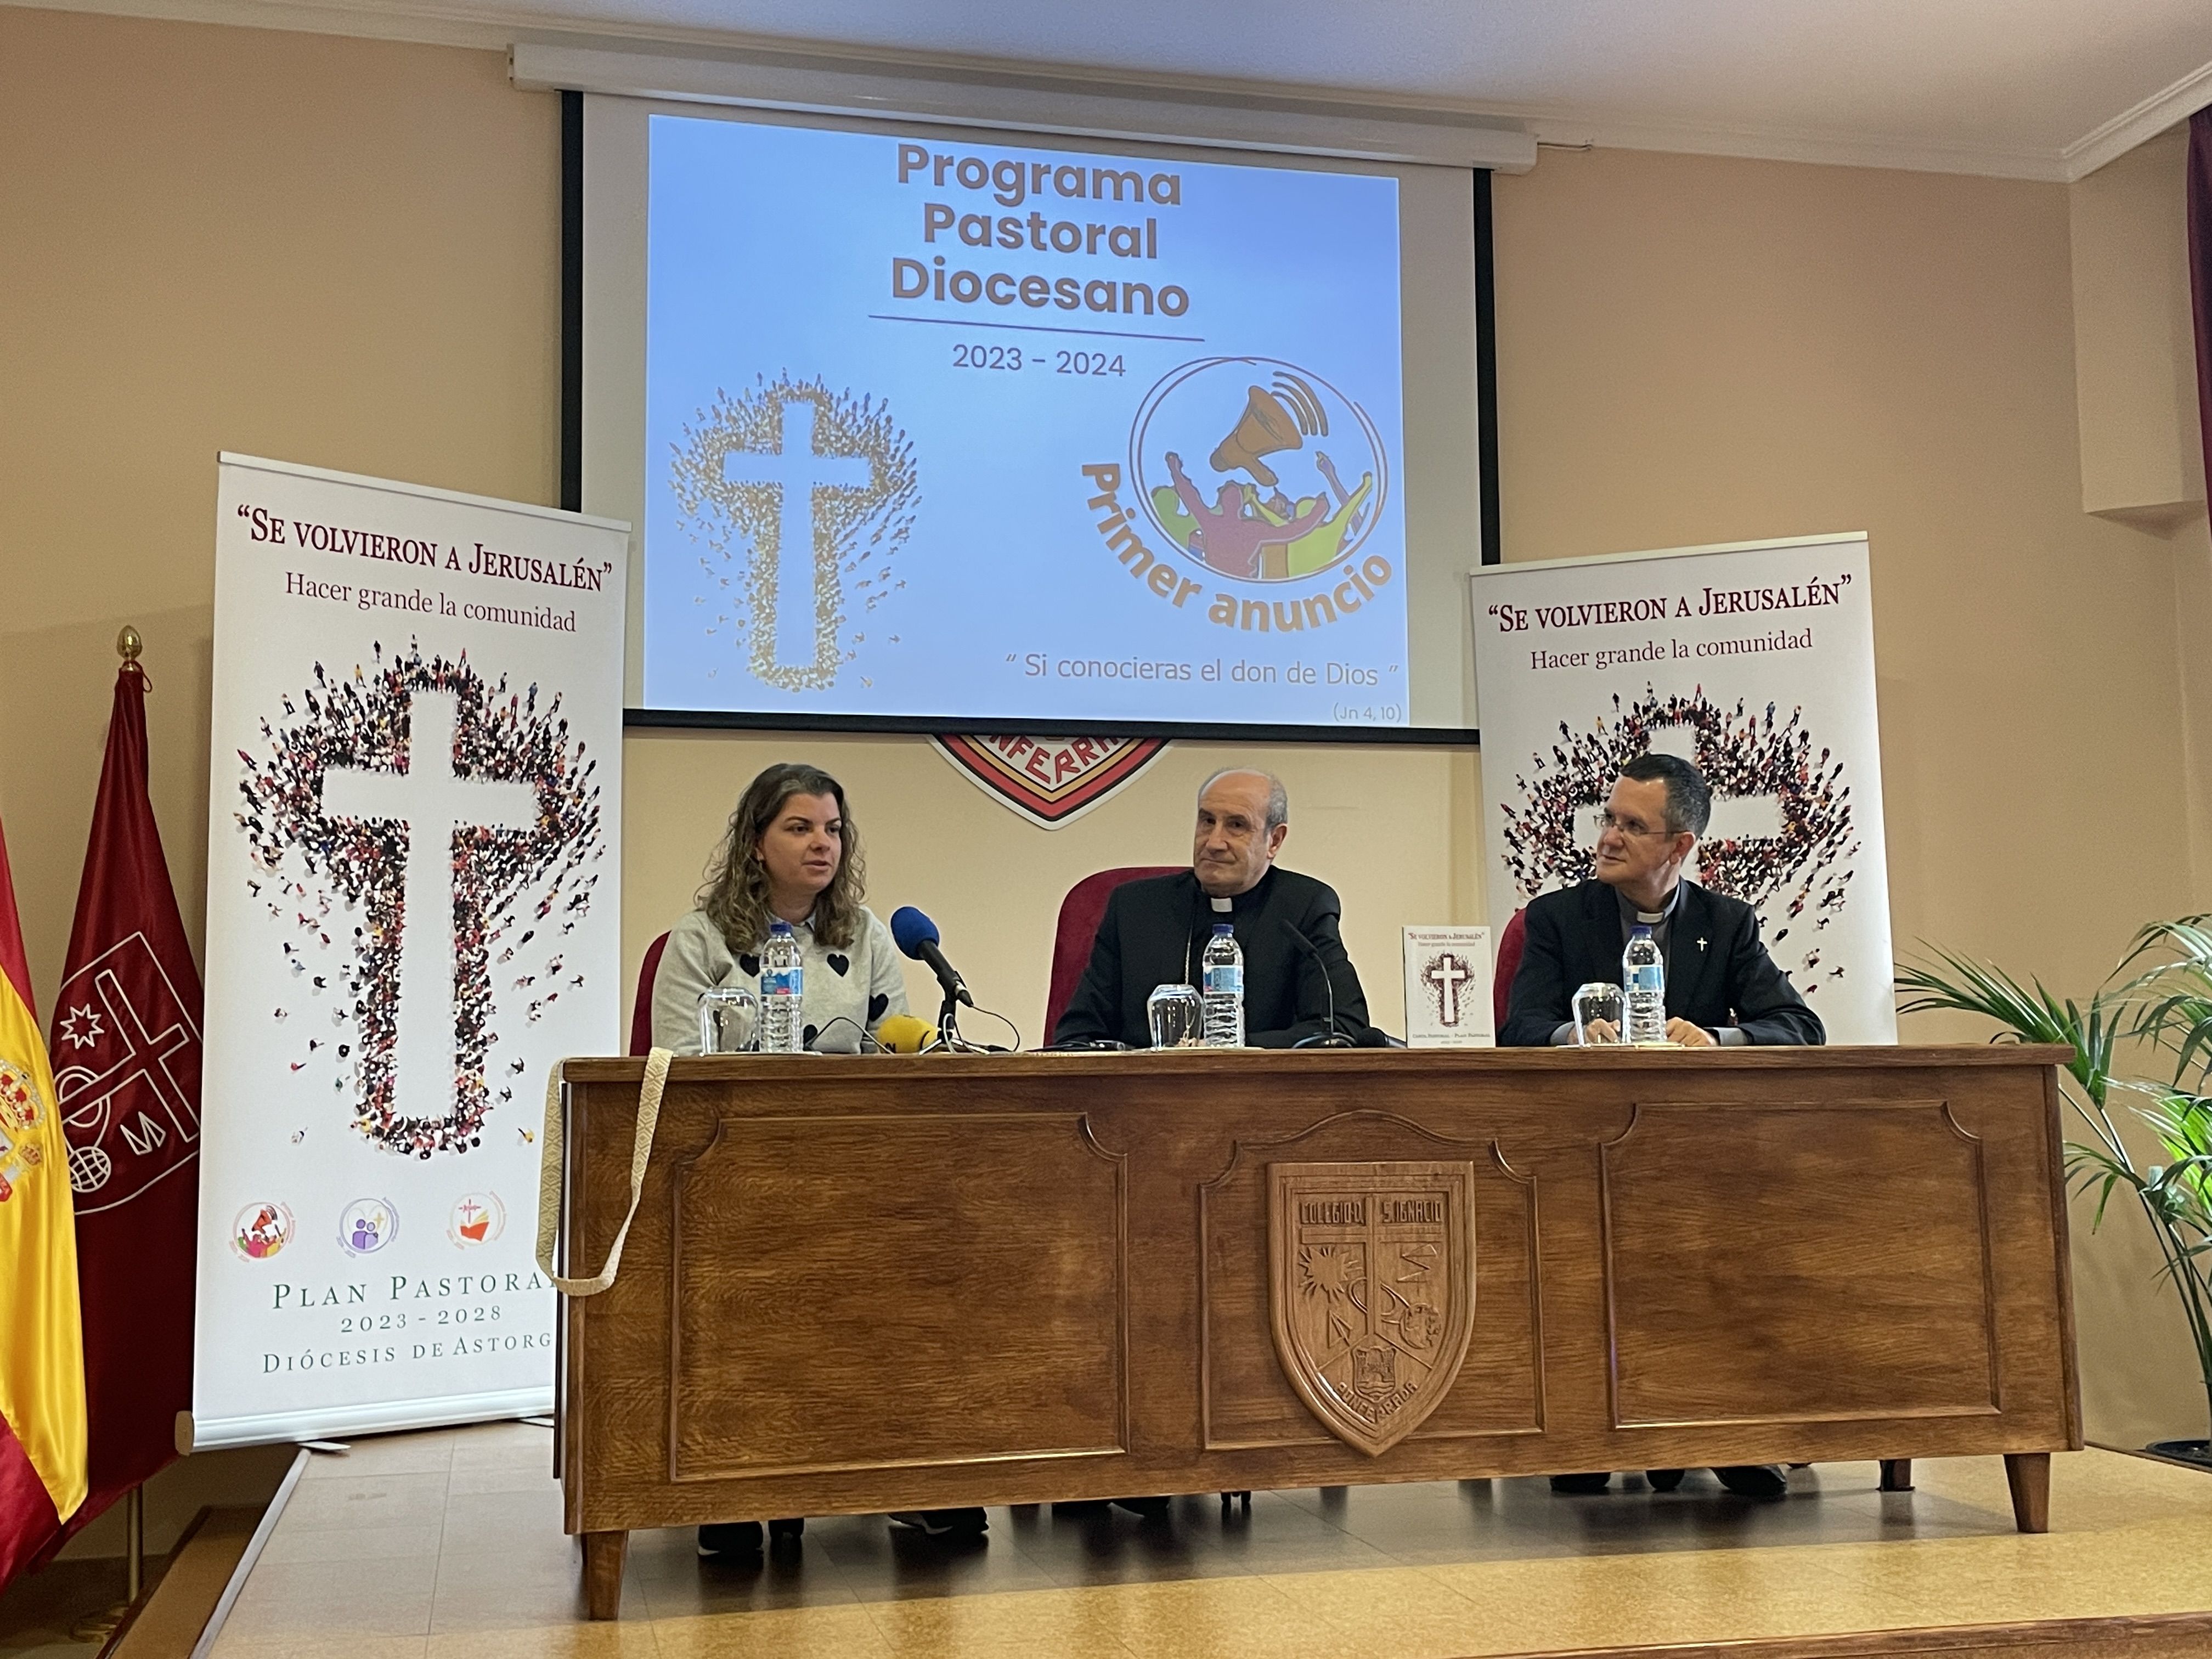 Presentación del Plan Pastoral Diocesano 2023-2028 en Ponferrada. | Javier Fernández